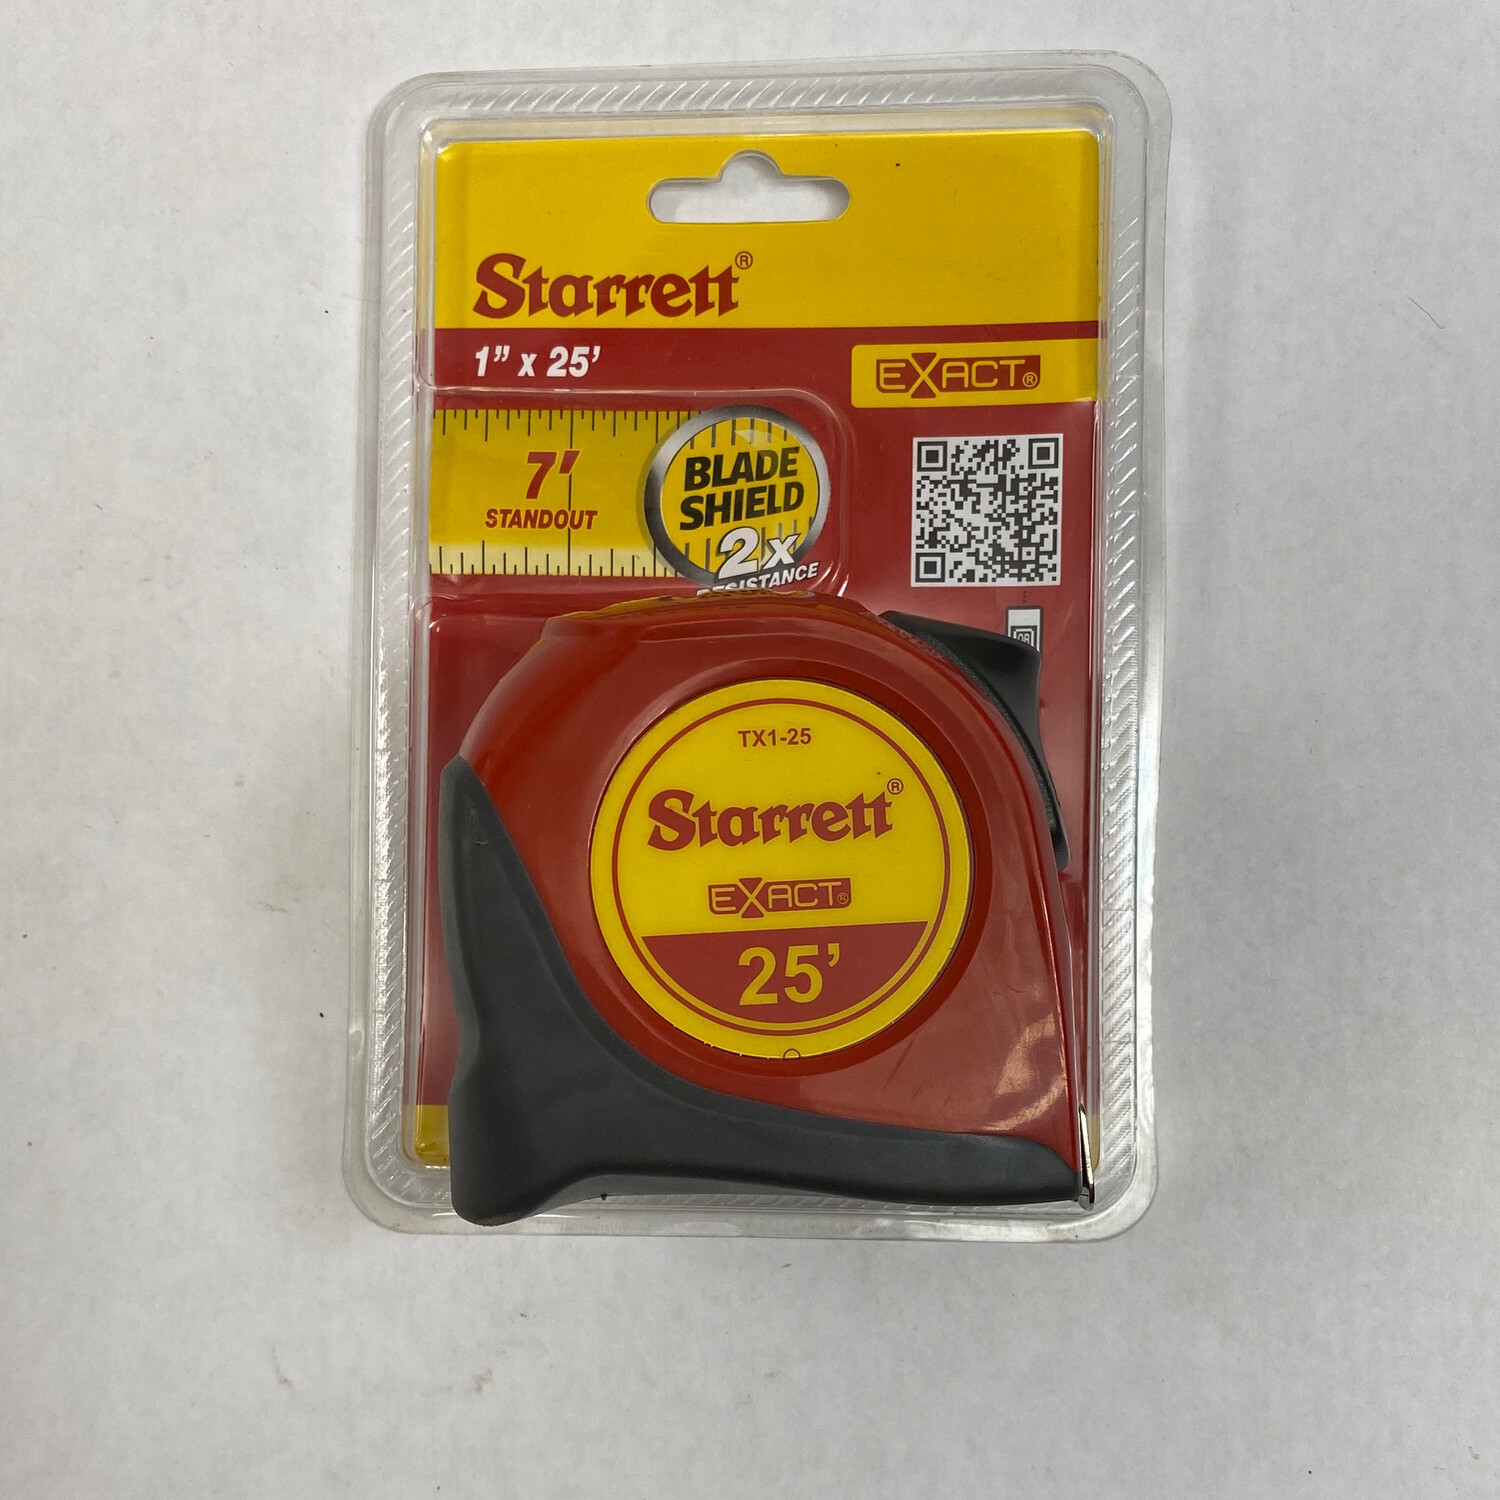 Starrett 25’ Tape Measure, TX1-25